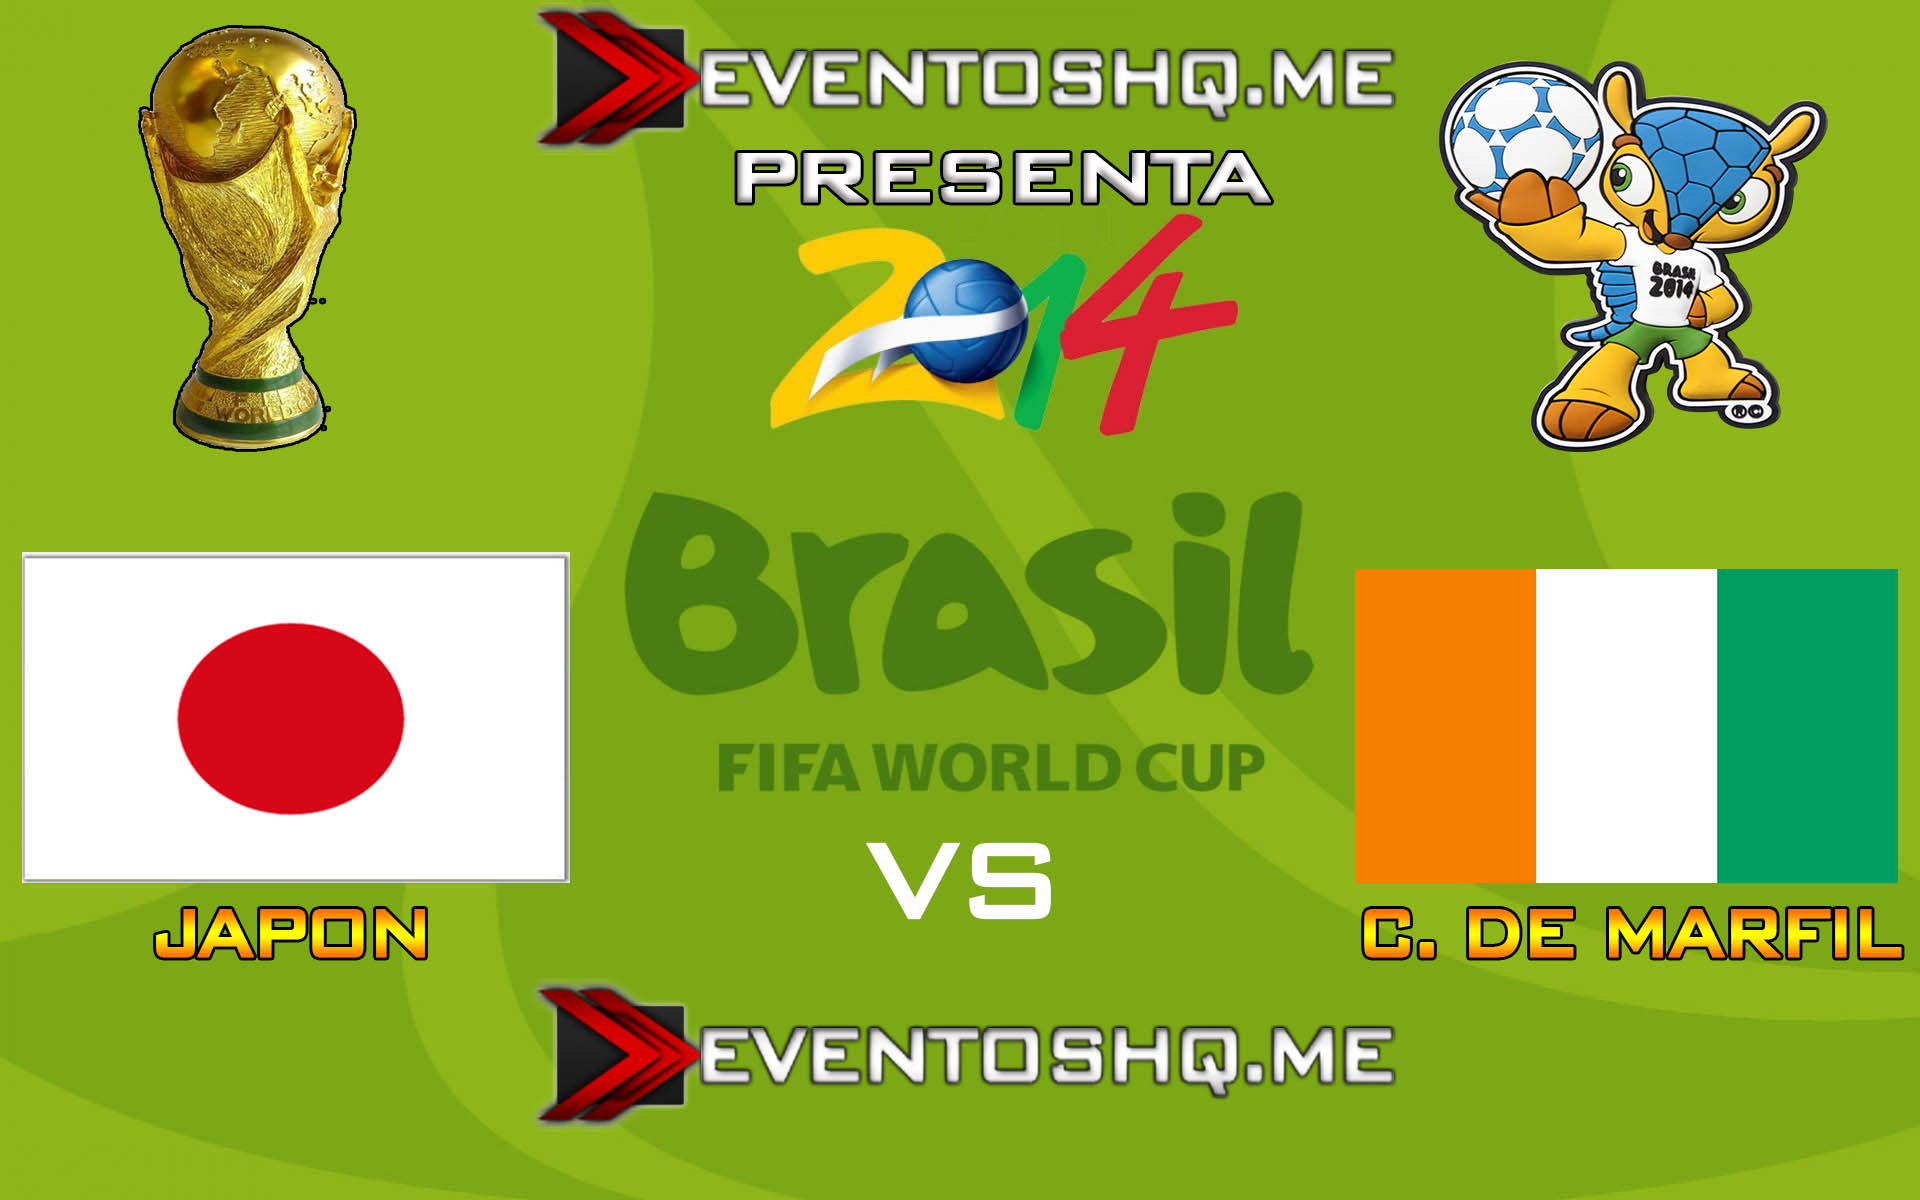 Ver en Vivo Japon vs Irlanda Mundial Brasil 2014 www.eventoshq.me